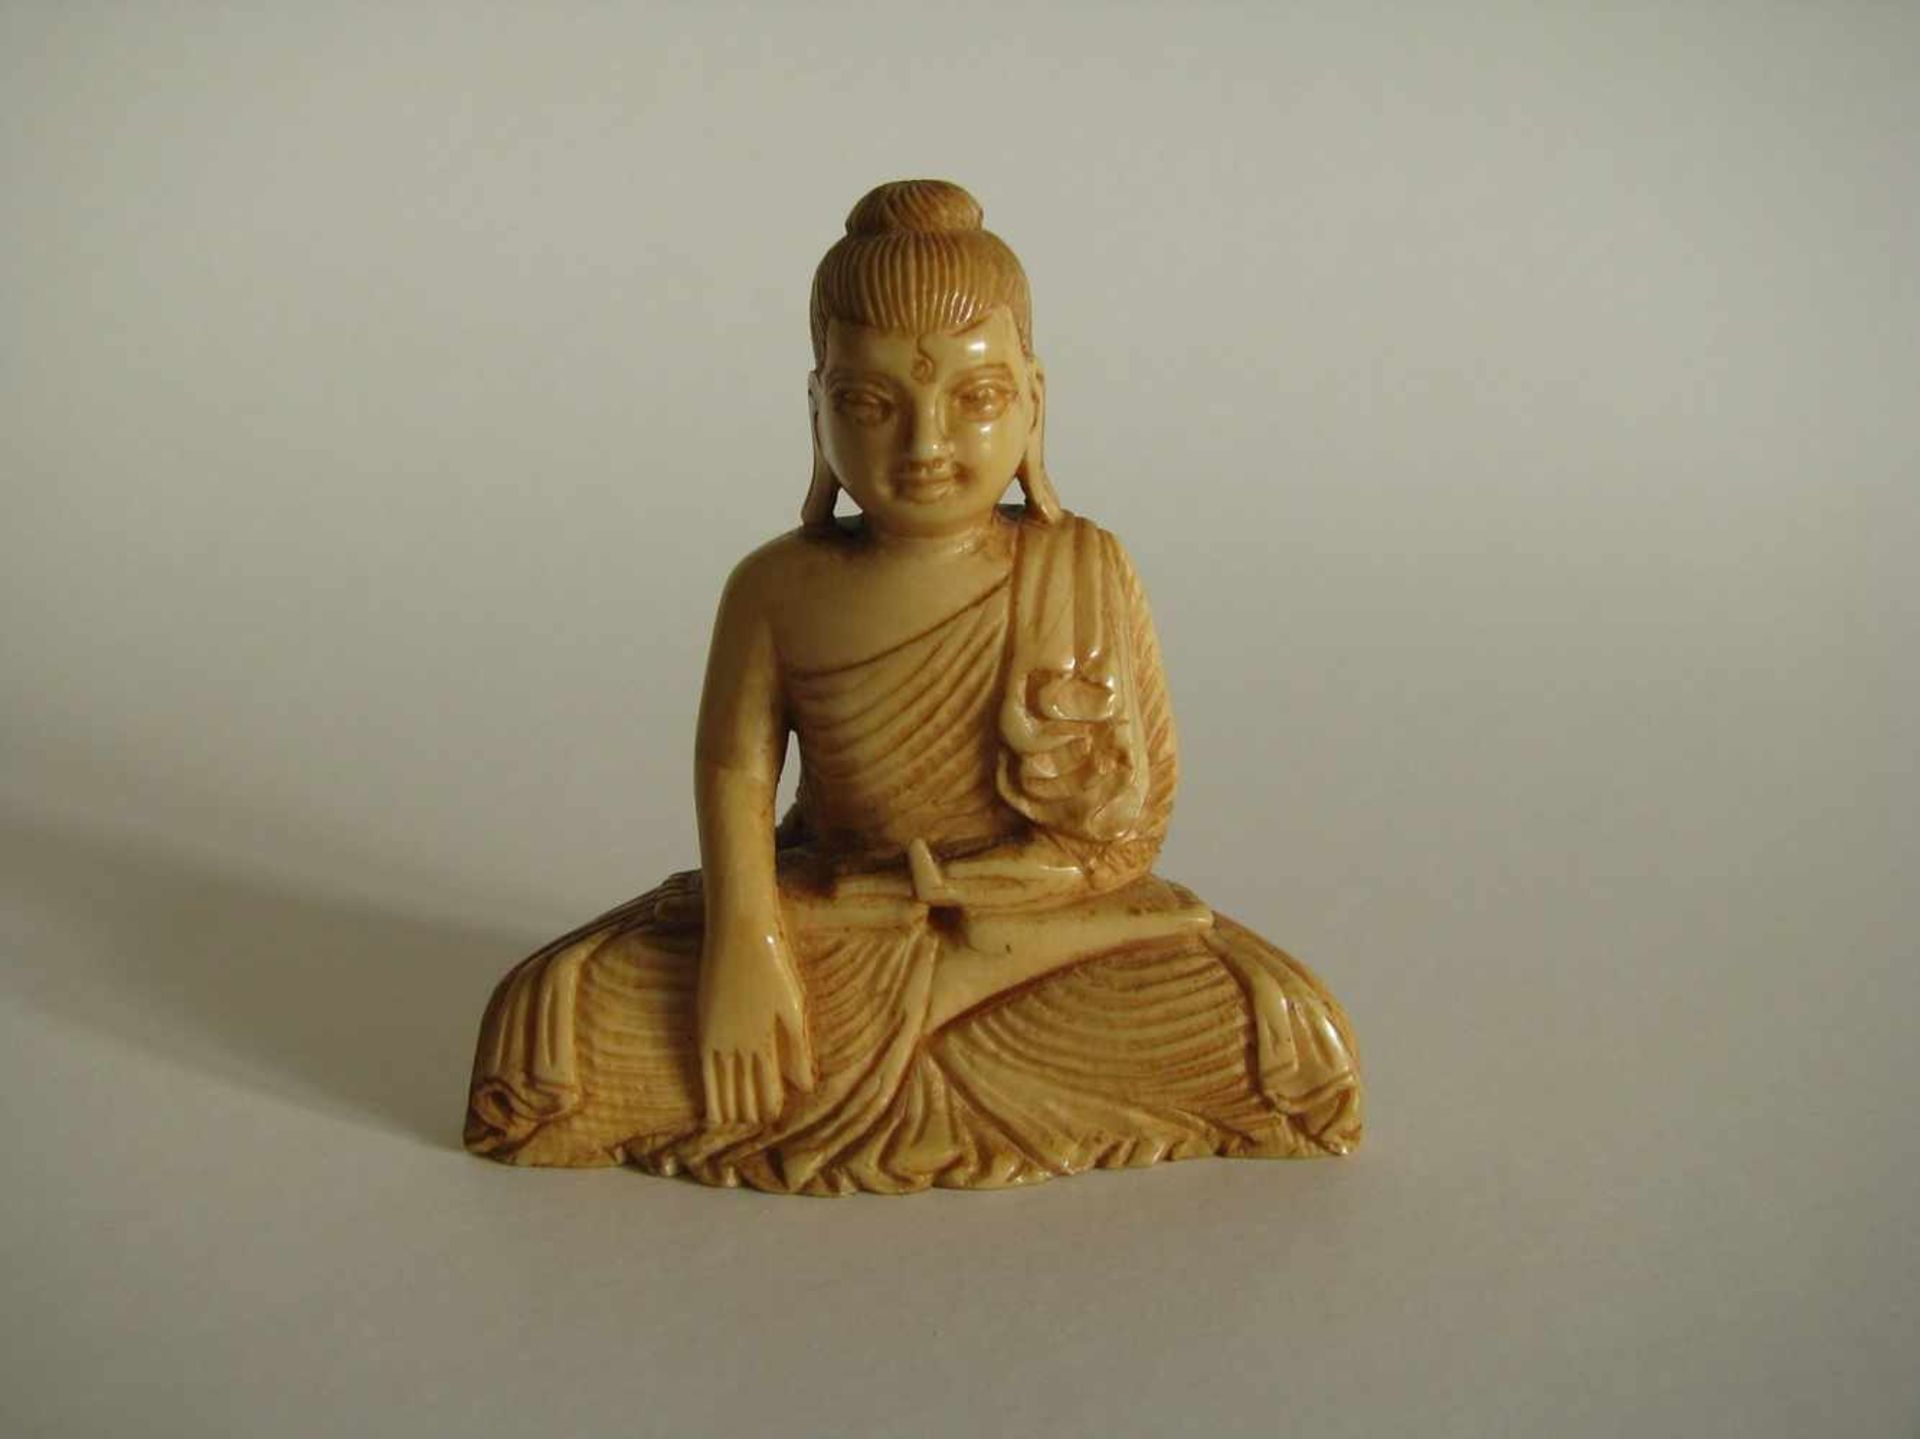 Sitzender Buddha, wohl Ceylon, 19. Jahrhundert, Elfenbein beschnitzt, 5,5 x 5,5 x 2,4 cm.